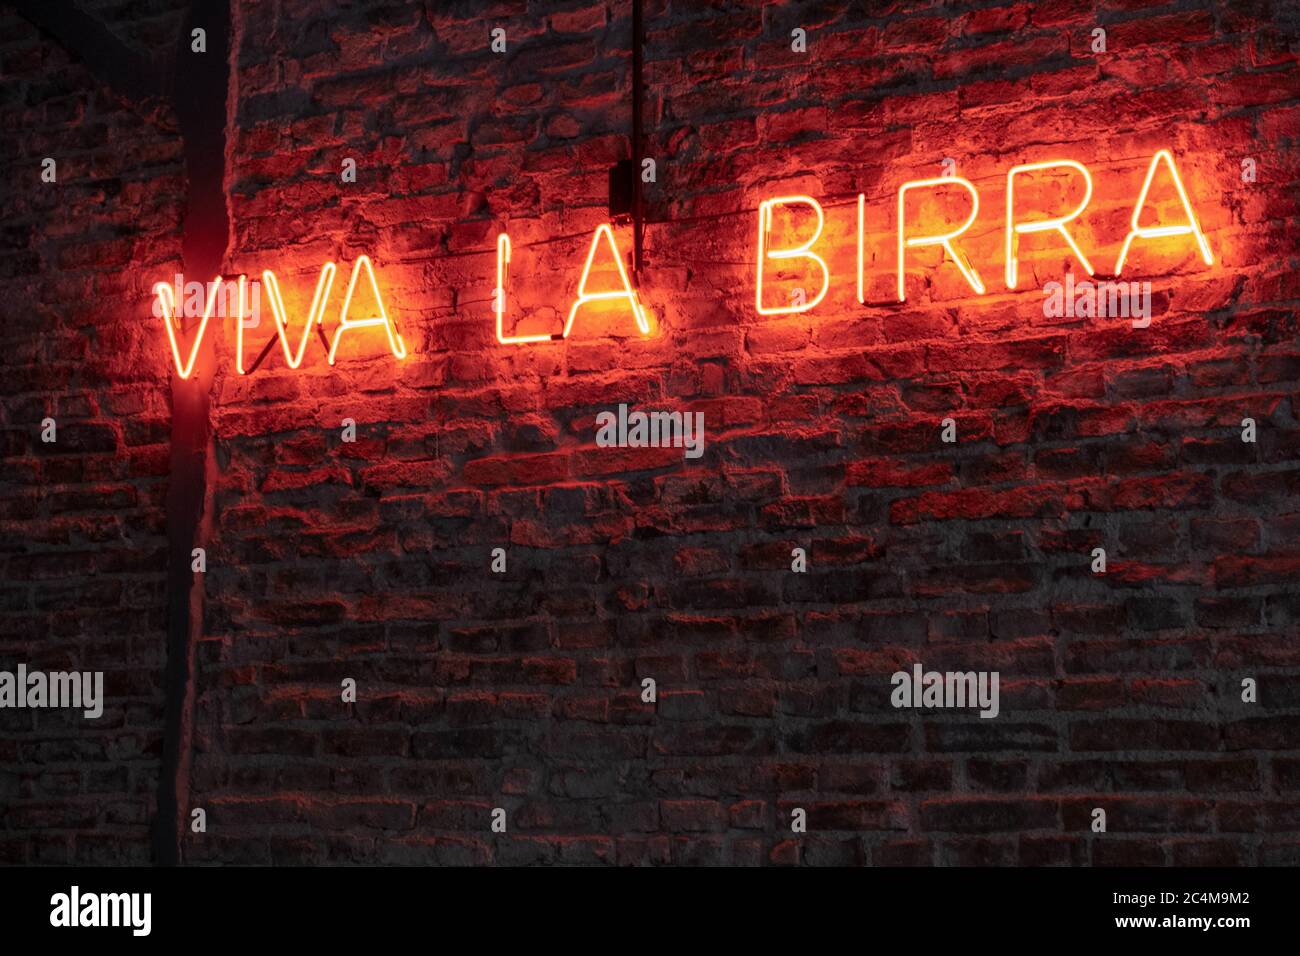 Palabras 'Viva la Birra' que significa 'Viva la cerveza' En italiano  escrito con luces de neón Fotografía de stock - Alamy